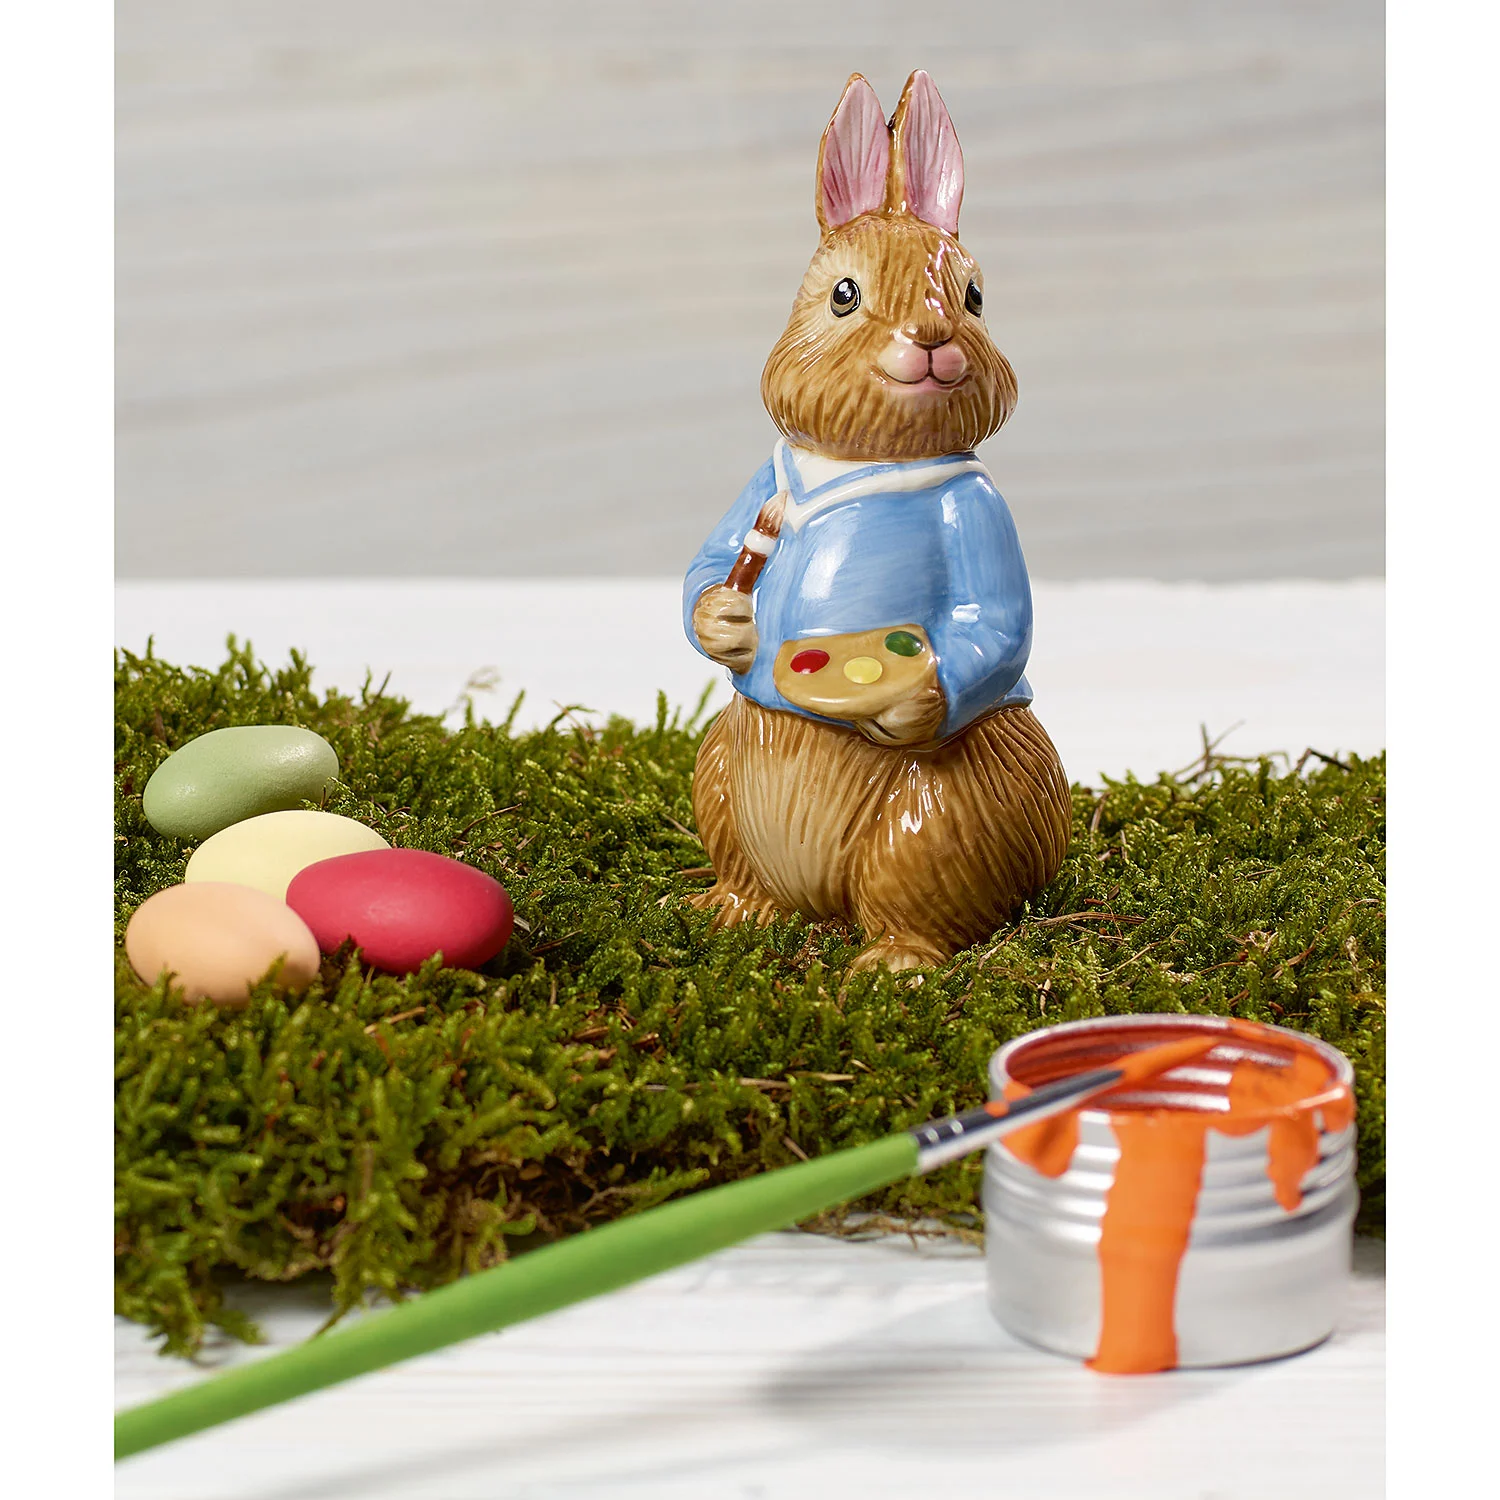 Bunny Tales Декоративная фигурка "Пасхальный кролик Макс" 11 см